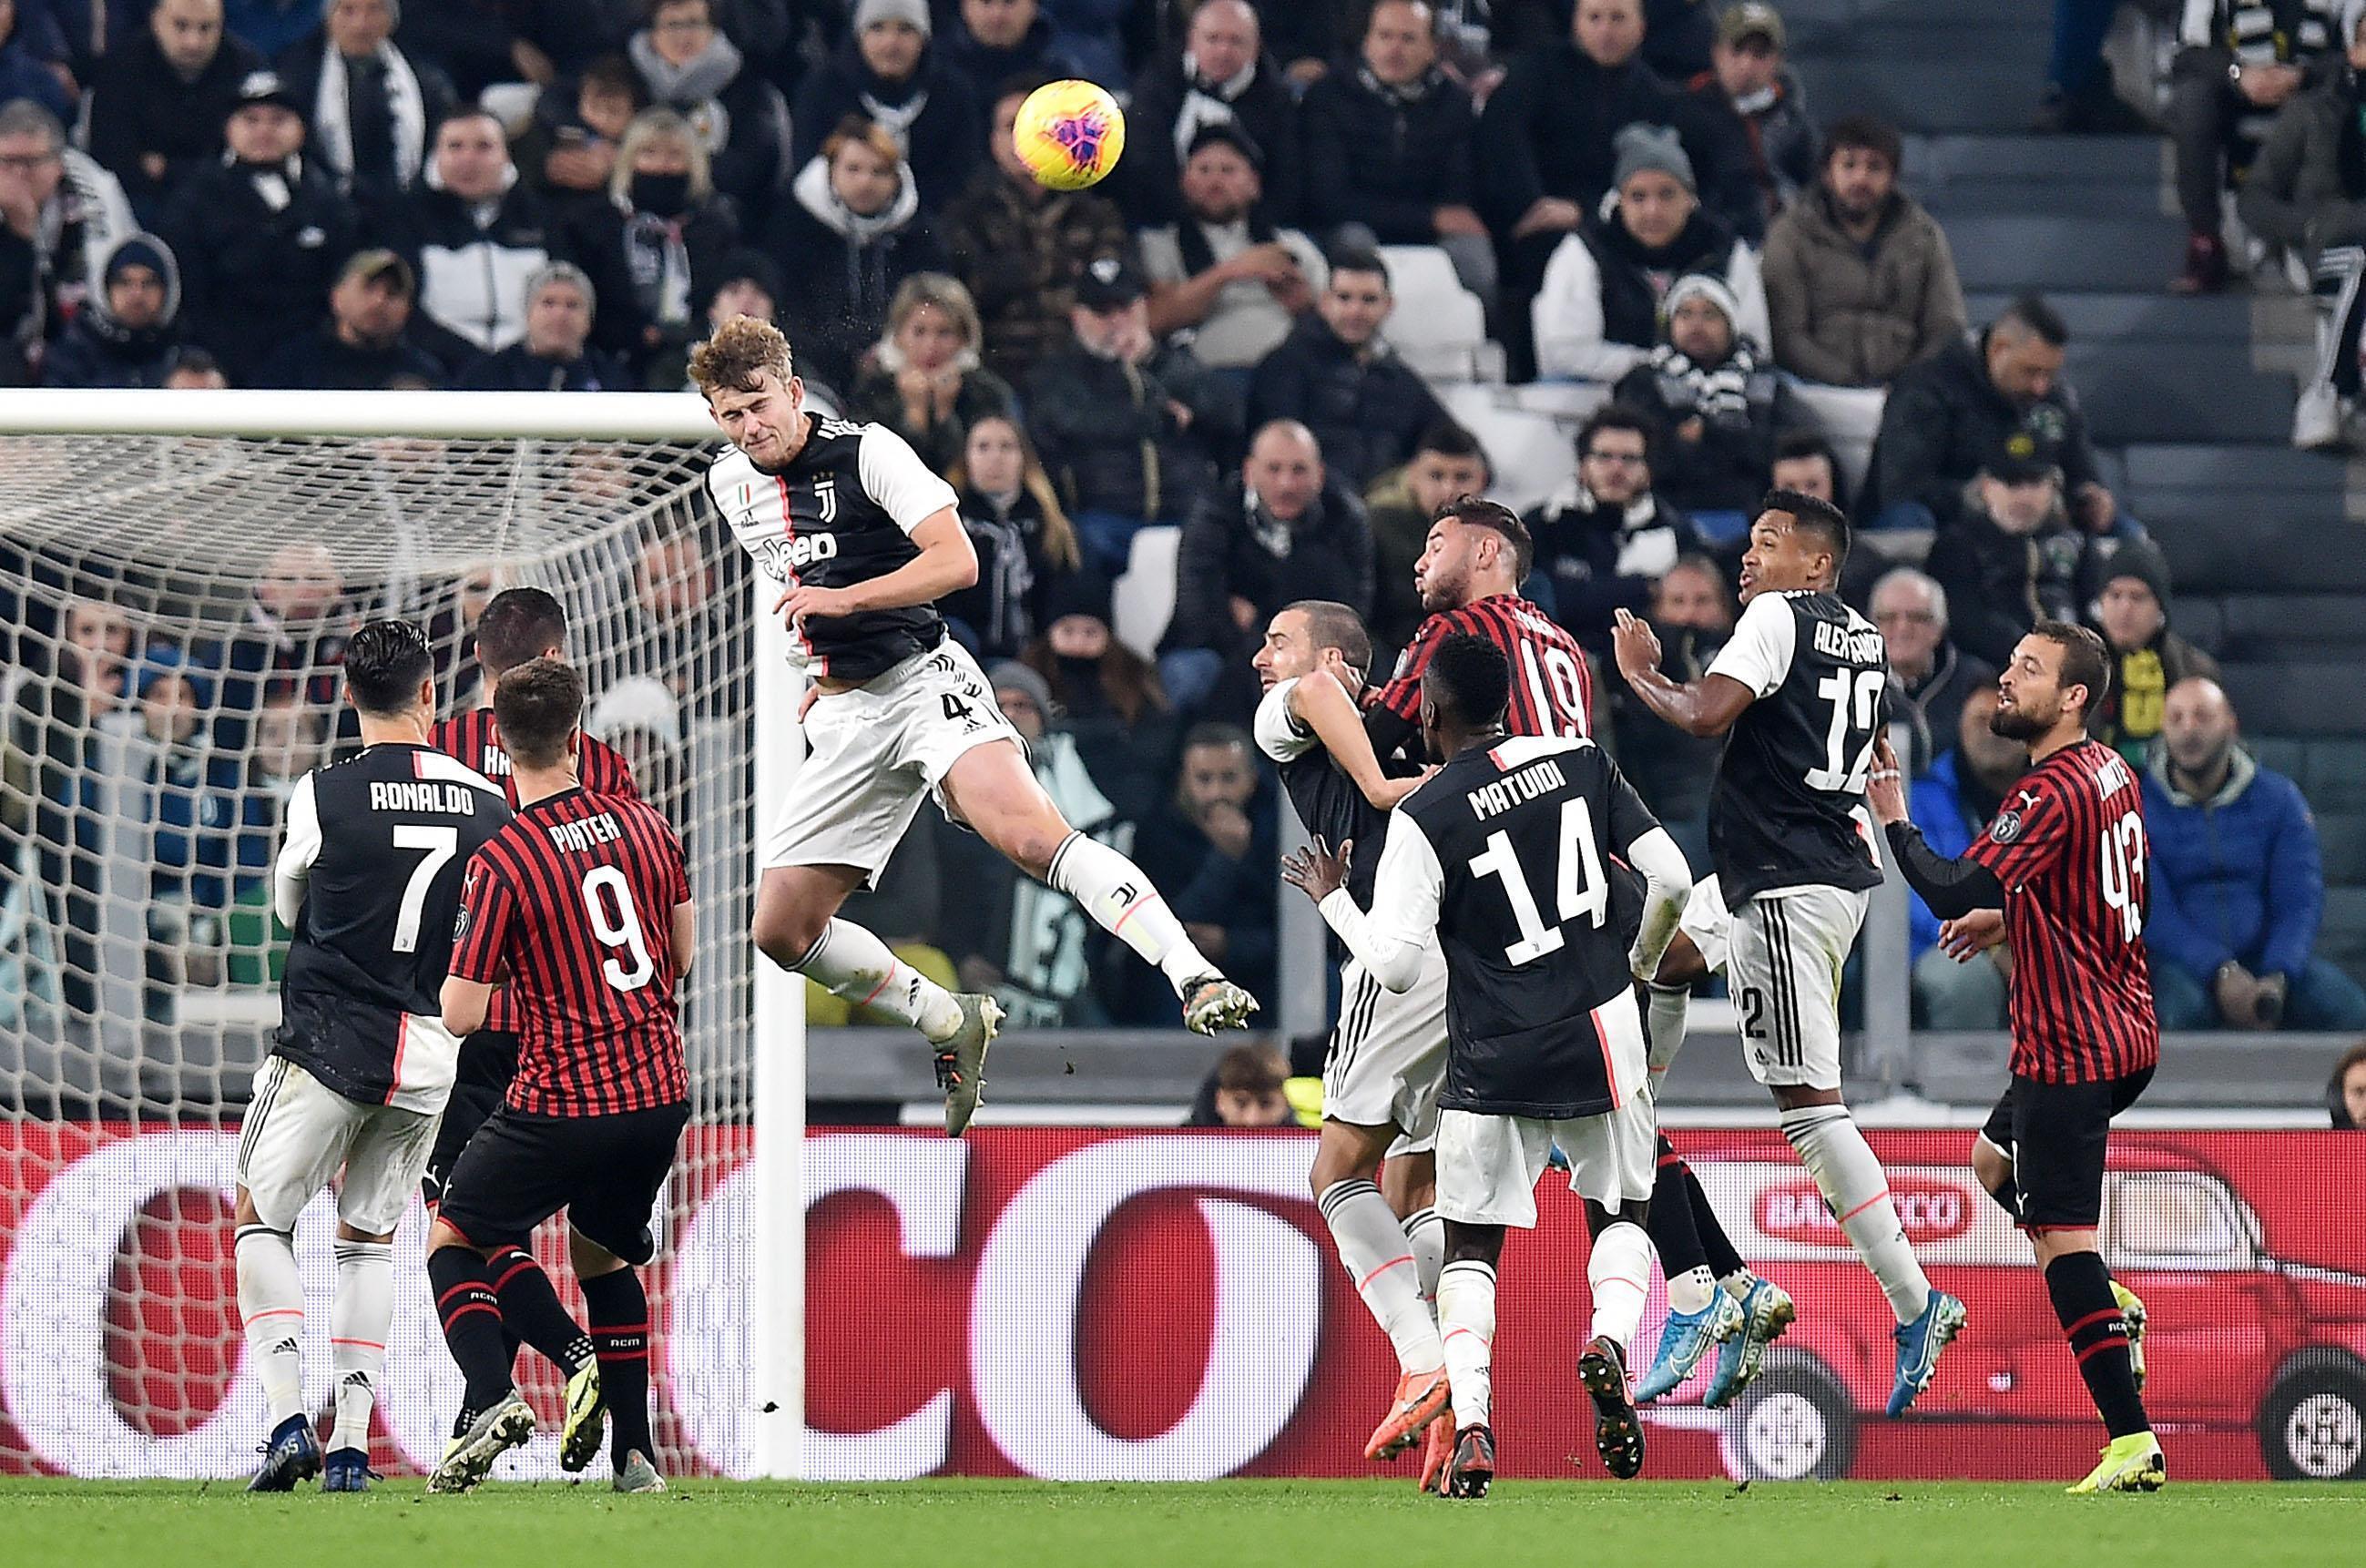 AC Milan vs Juventus